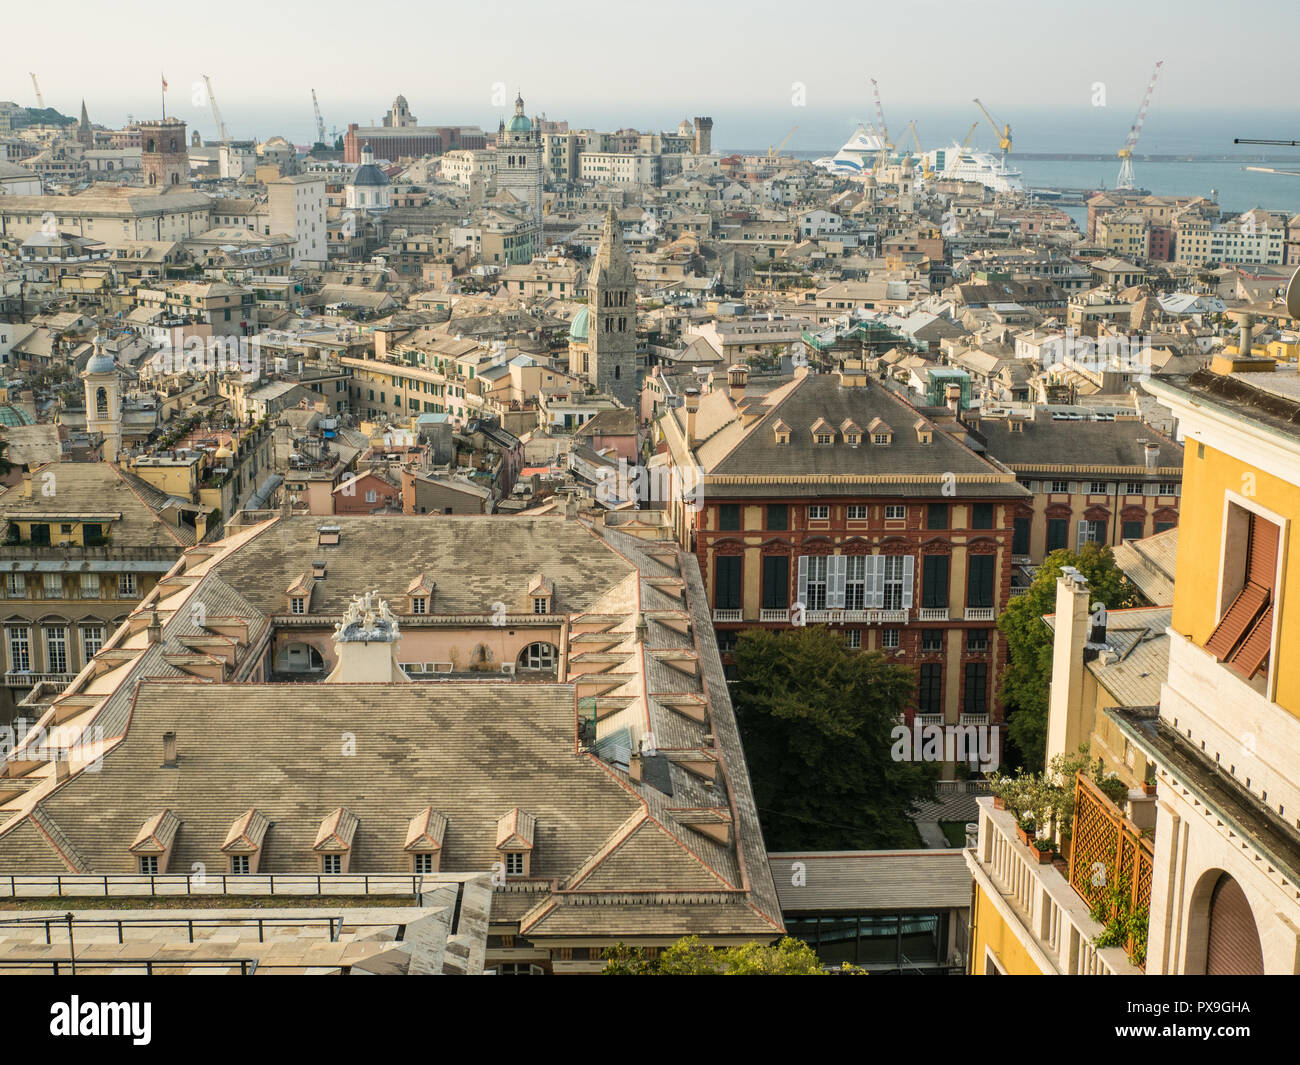 Gênes, une ville portuaire dans la région de Ligurie. Spianata Castelletto, vue de la façade du Palazzo Rosso rouge peut être vu au centre à droite. Banque D'Images